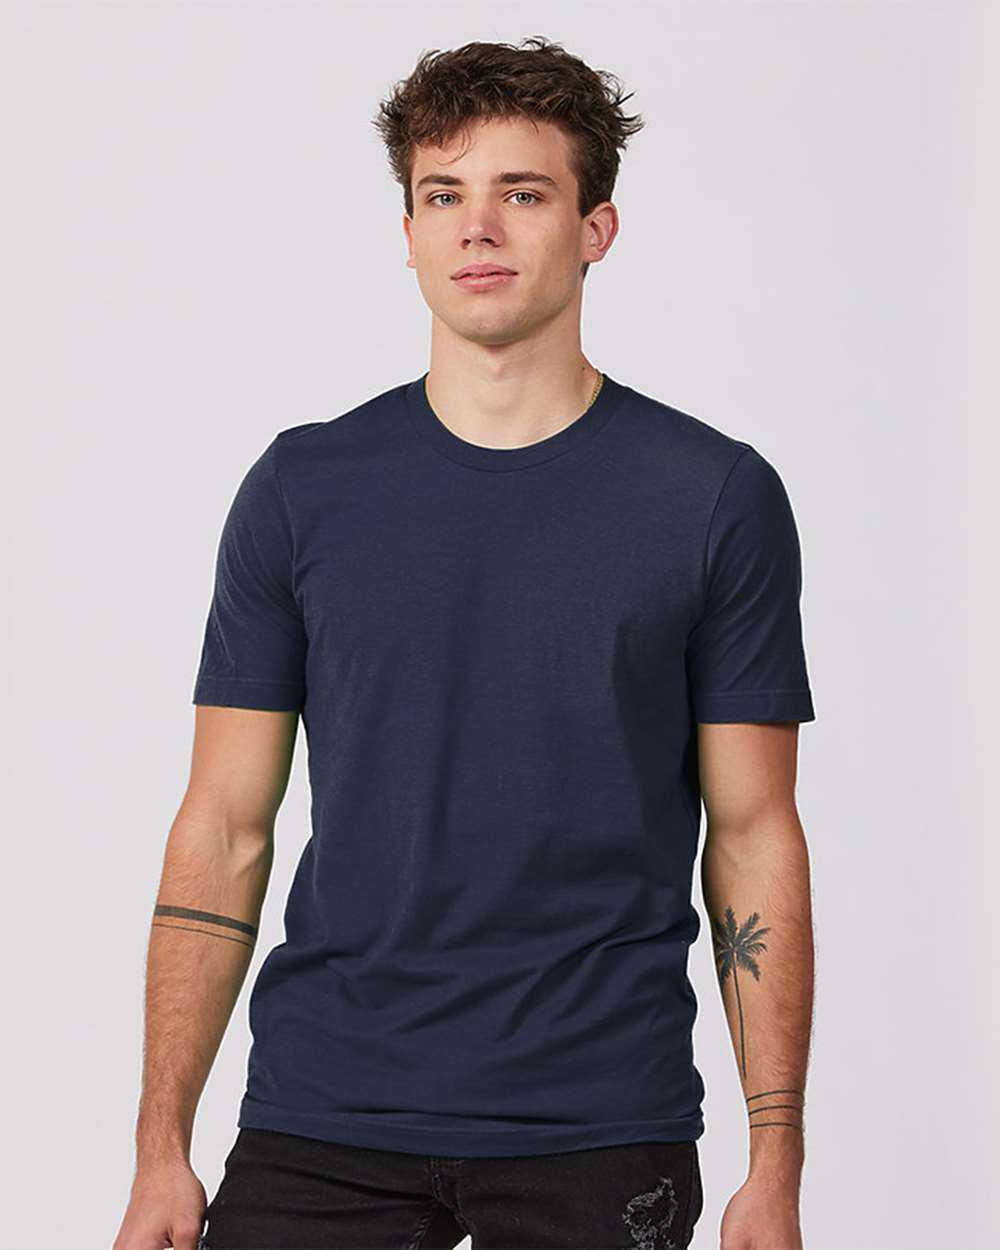 Tultex 502 Premium Cotton T-Shirt - Navy - HIT a Double